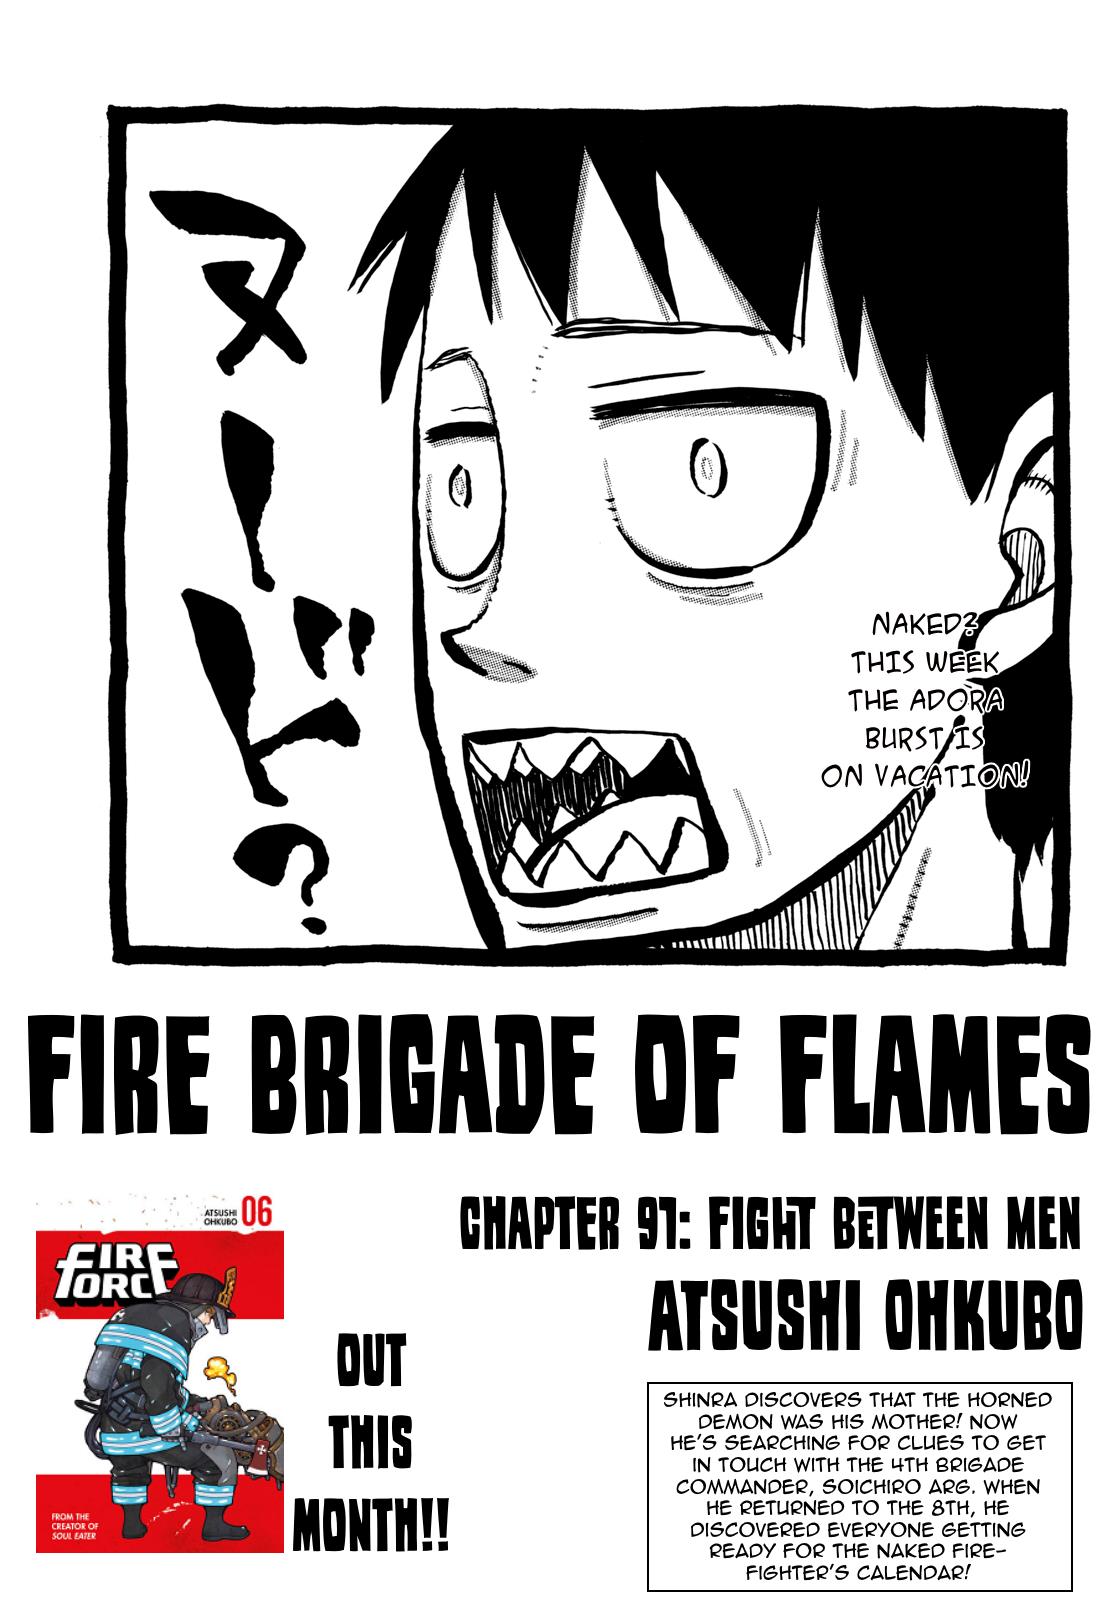 Fire Force Vol. 11 Ch. 91 Fight Between Men